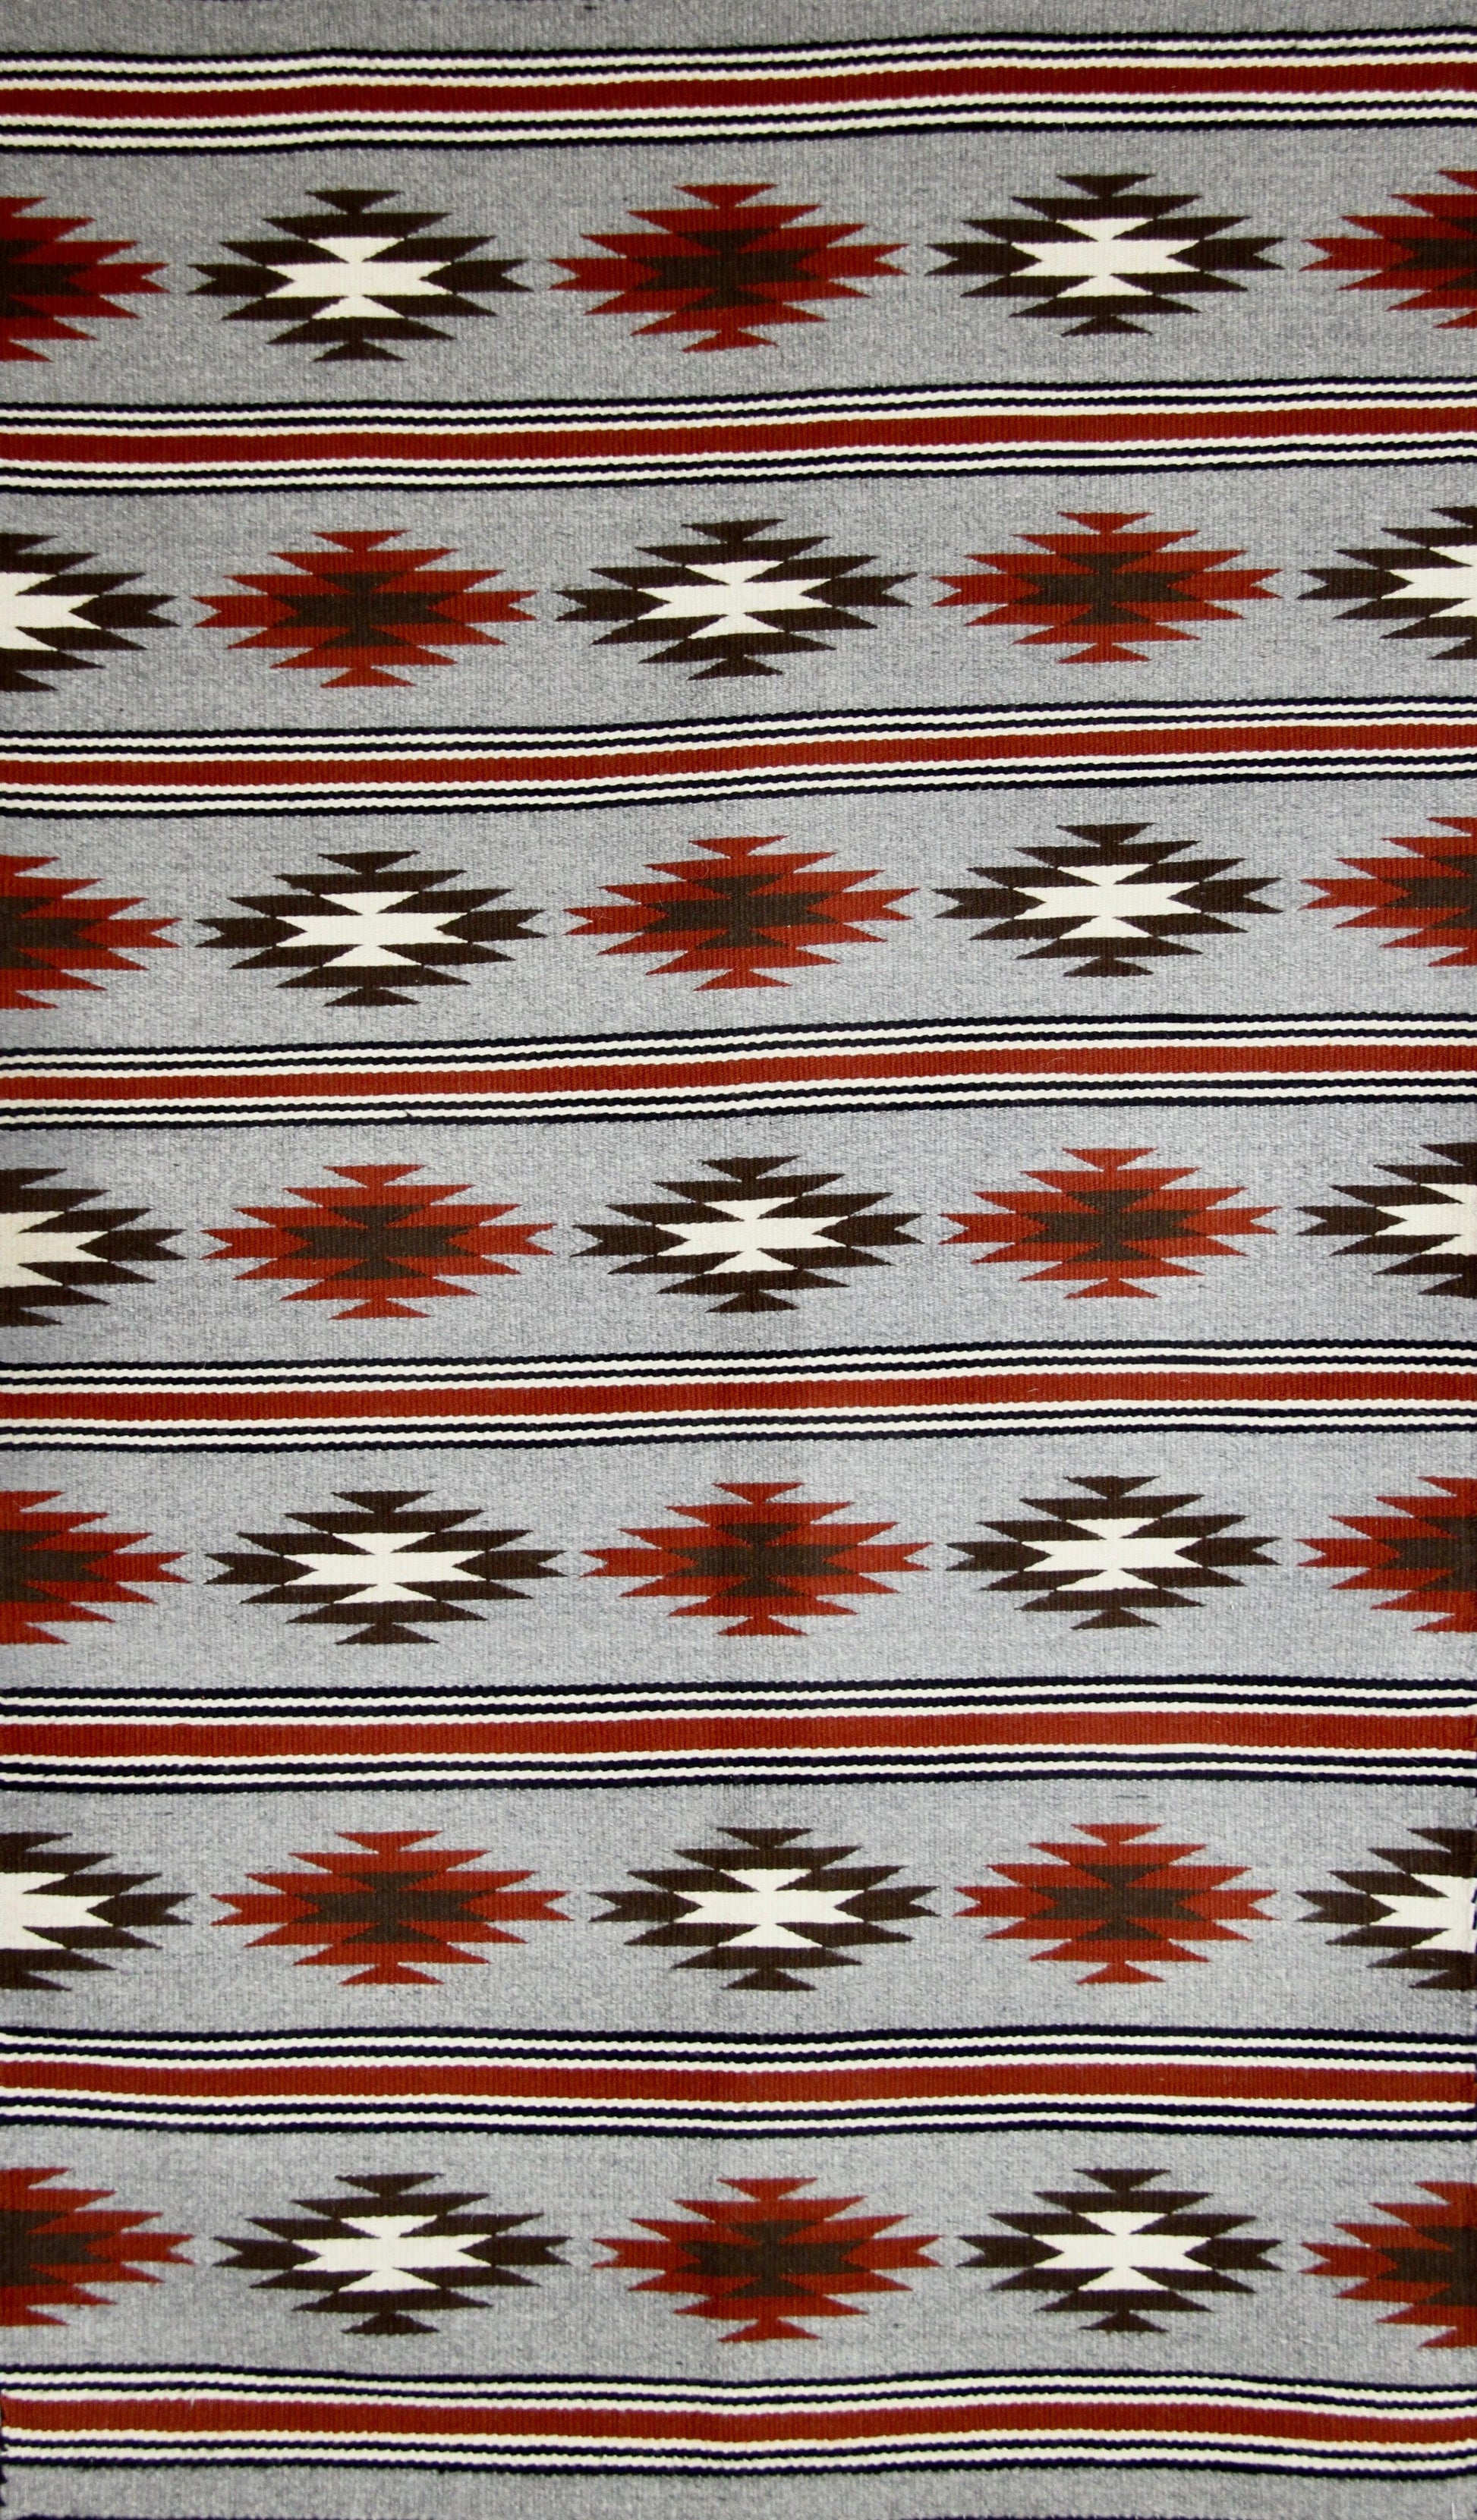 35" x 59" Chinle by Bertha Harvey-Weaving-Navajo Weaving-Sorrel Sky Gallery